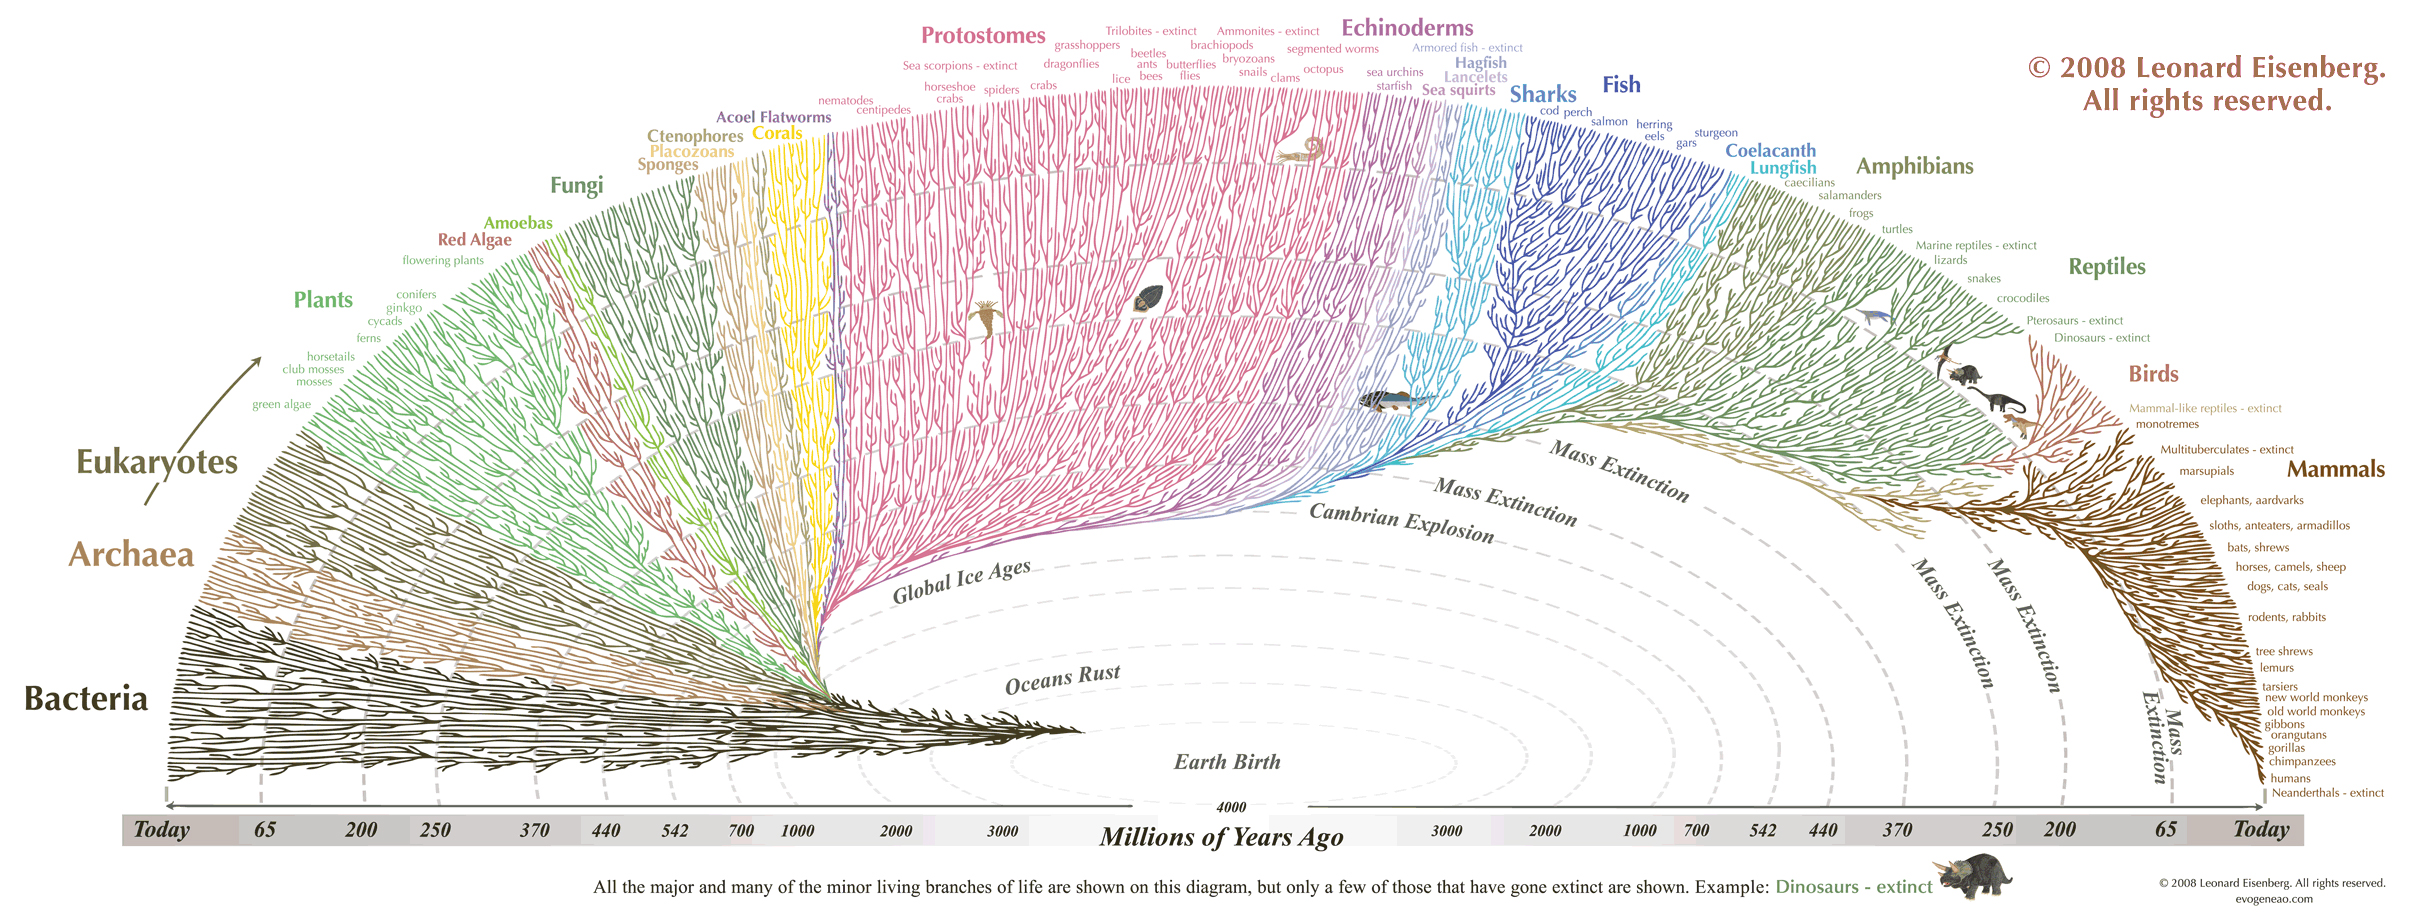 Human Family Tree Chart